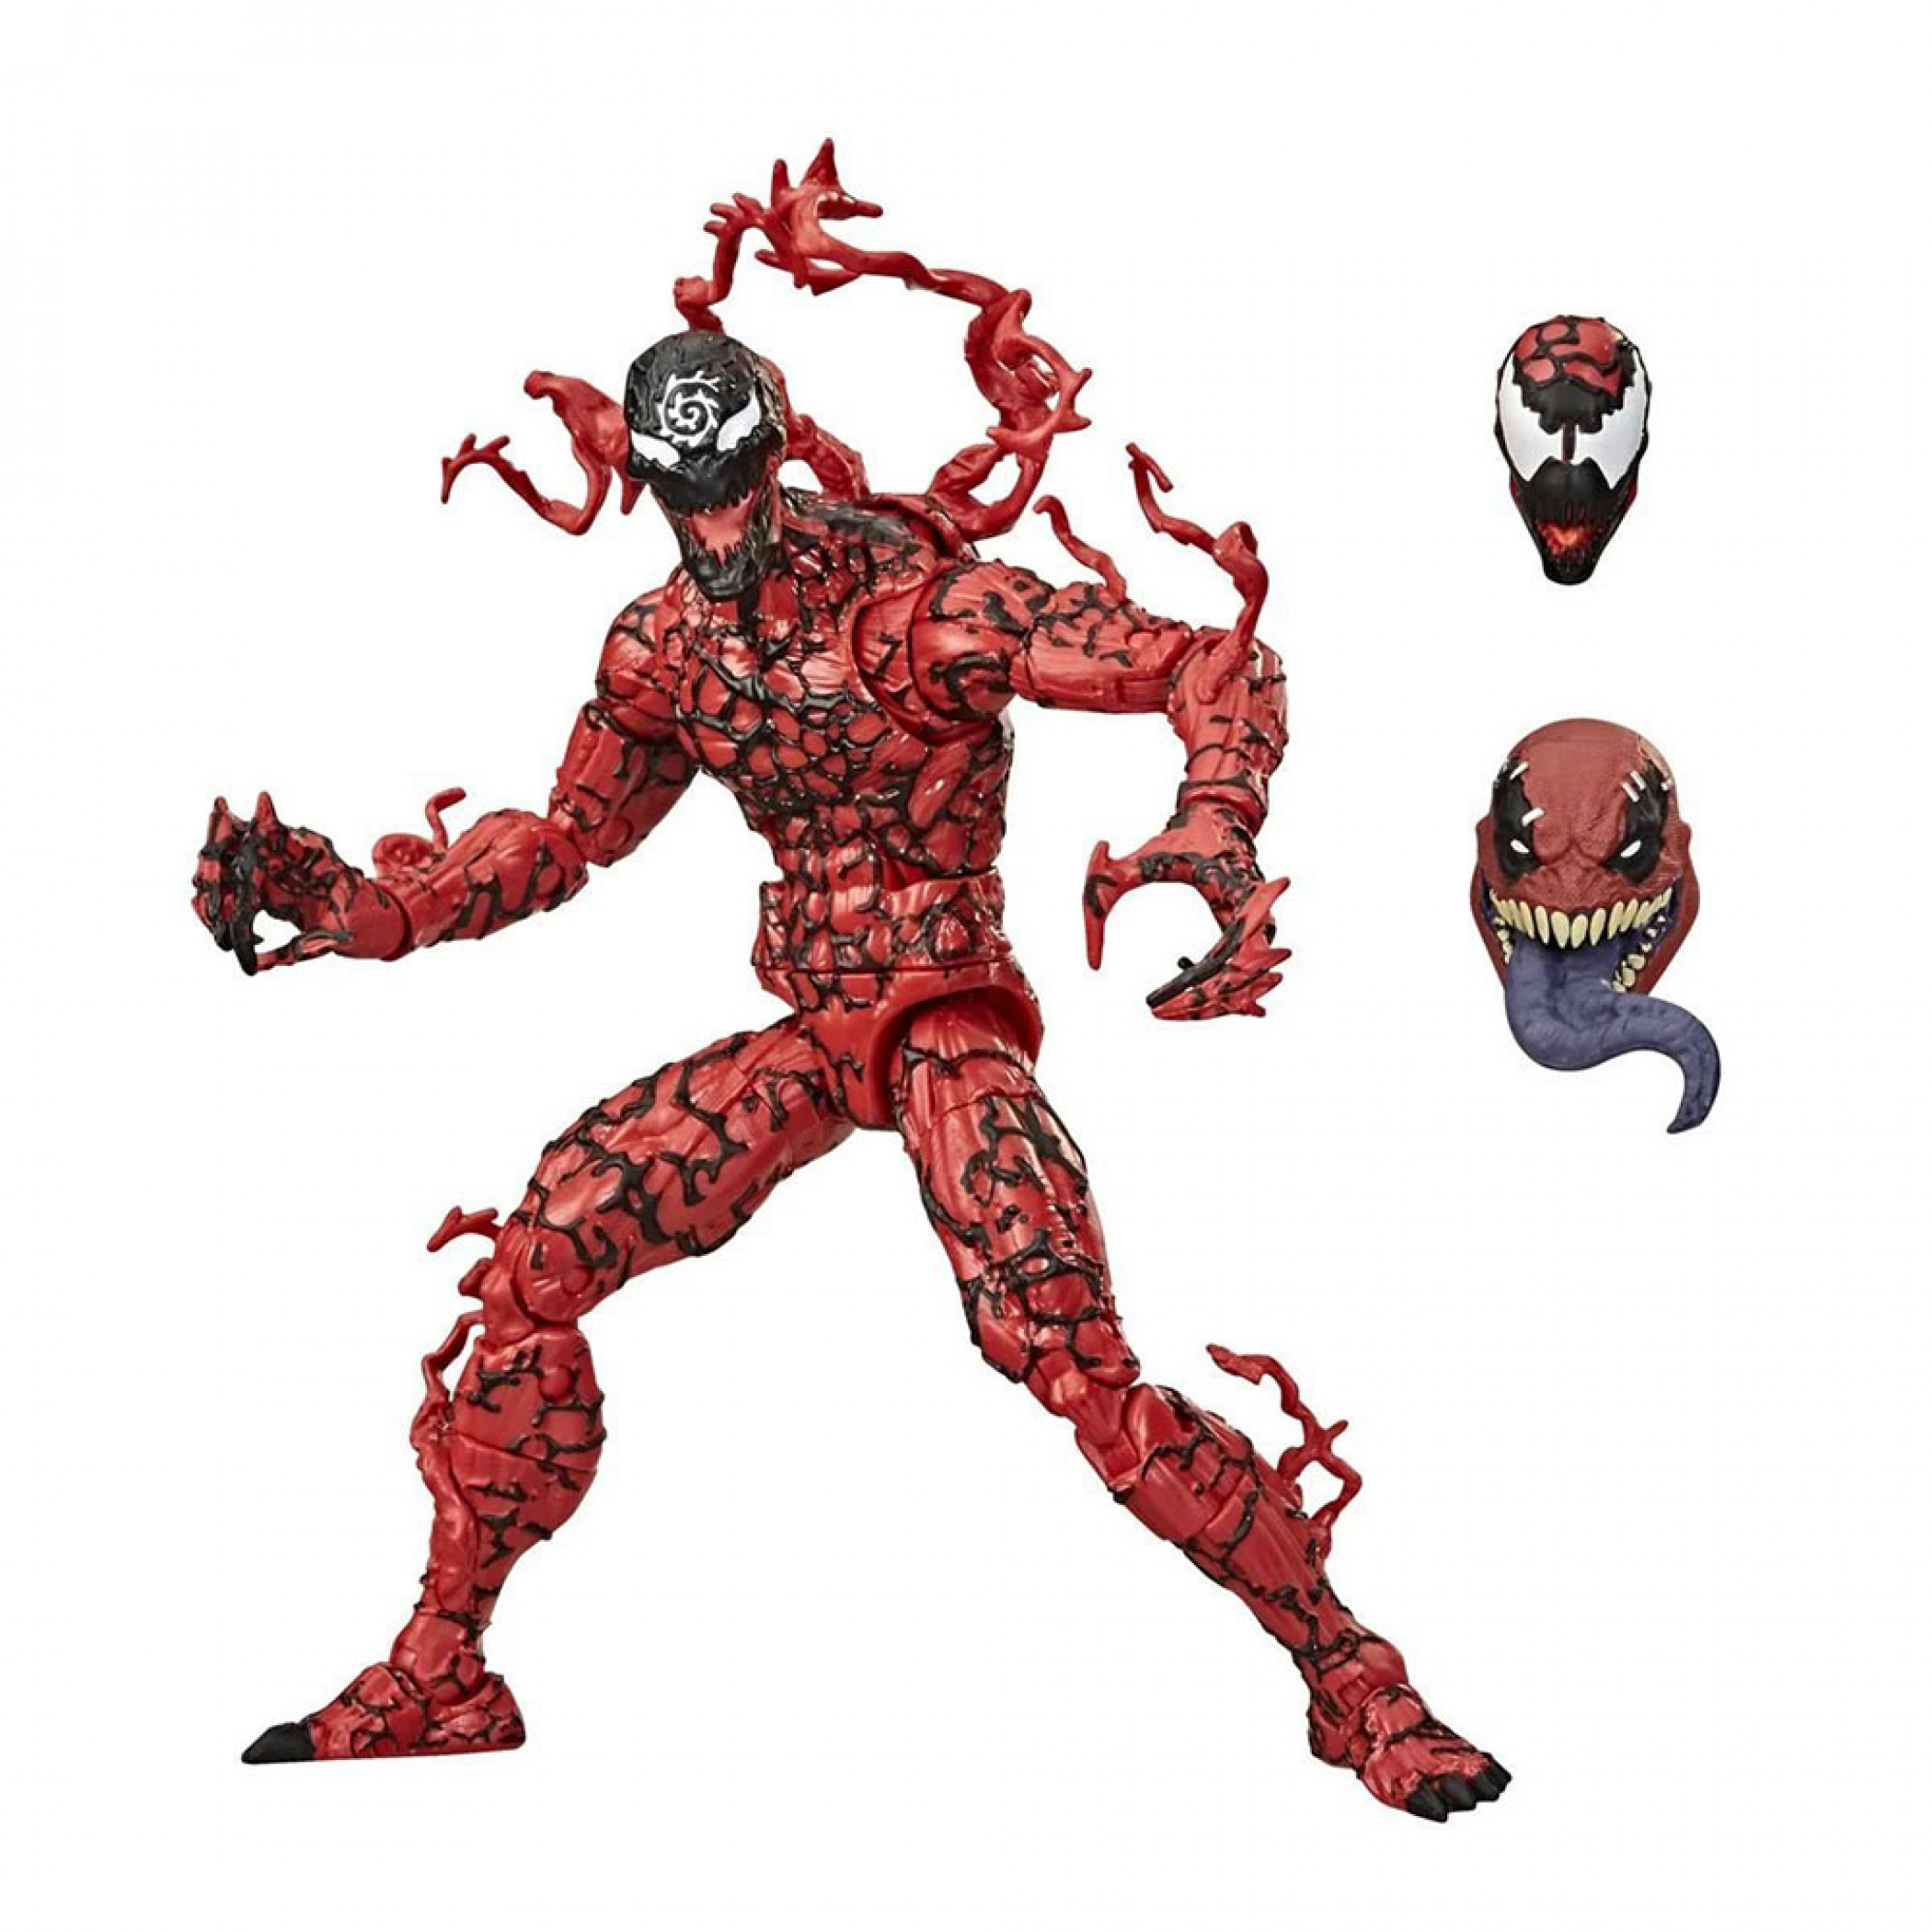 Marvel Comics Venom Carnage 6" Posable Figure w/ Interchangeable Faces